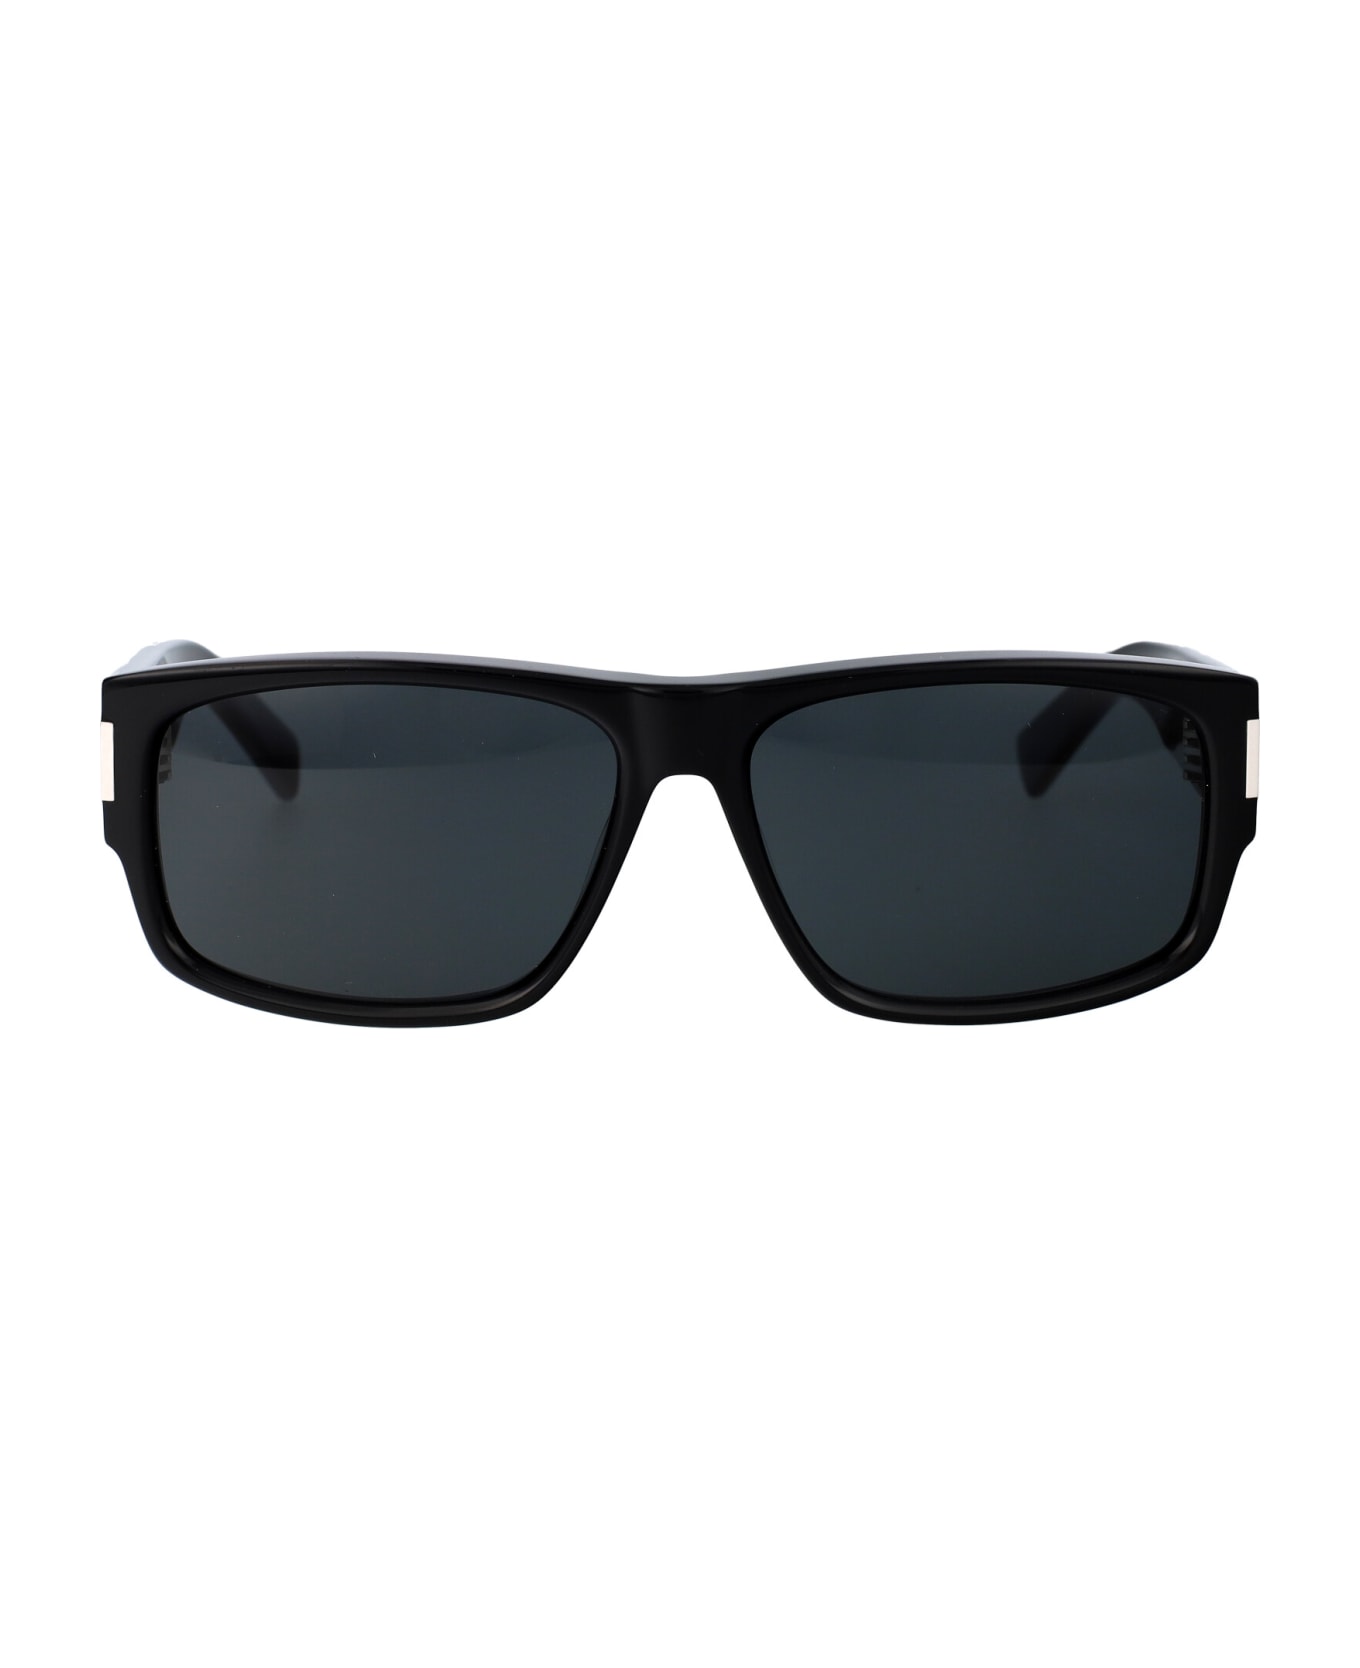 Saint Laurent Eyewear Sl 689 Sunglasses - 001 BLACK BLACK BLACK